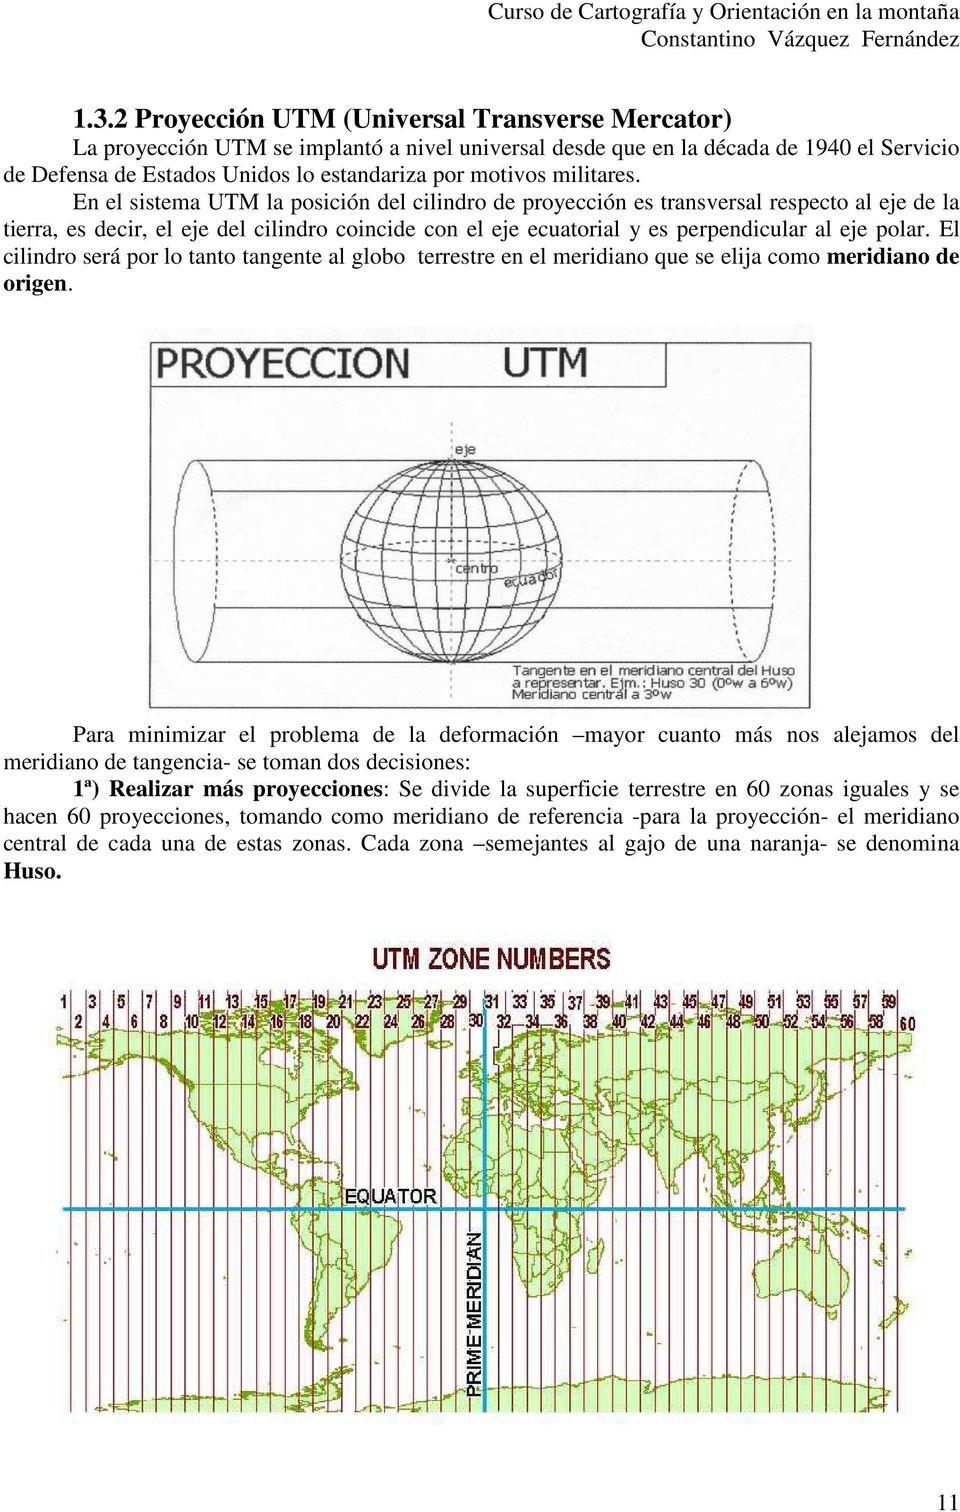 En el sistema UTM la posición del cilindro de proyección es transversal respecto al eje de la tierra, es decir, el eje del cilindro coincide con el eje ecuatorial y es perpendicular al eje polar.